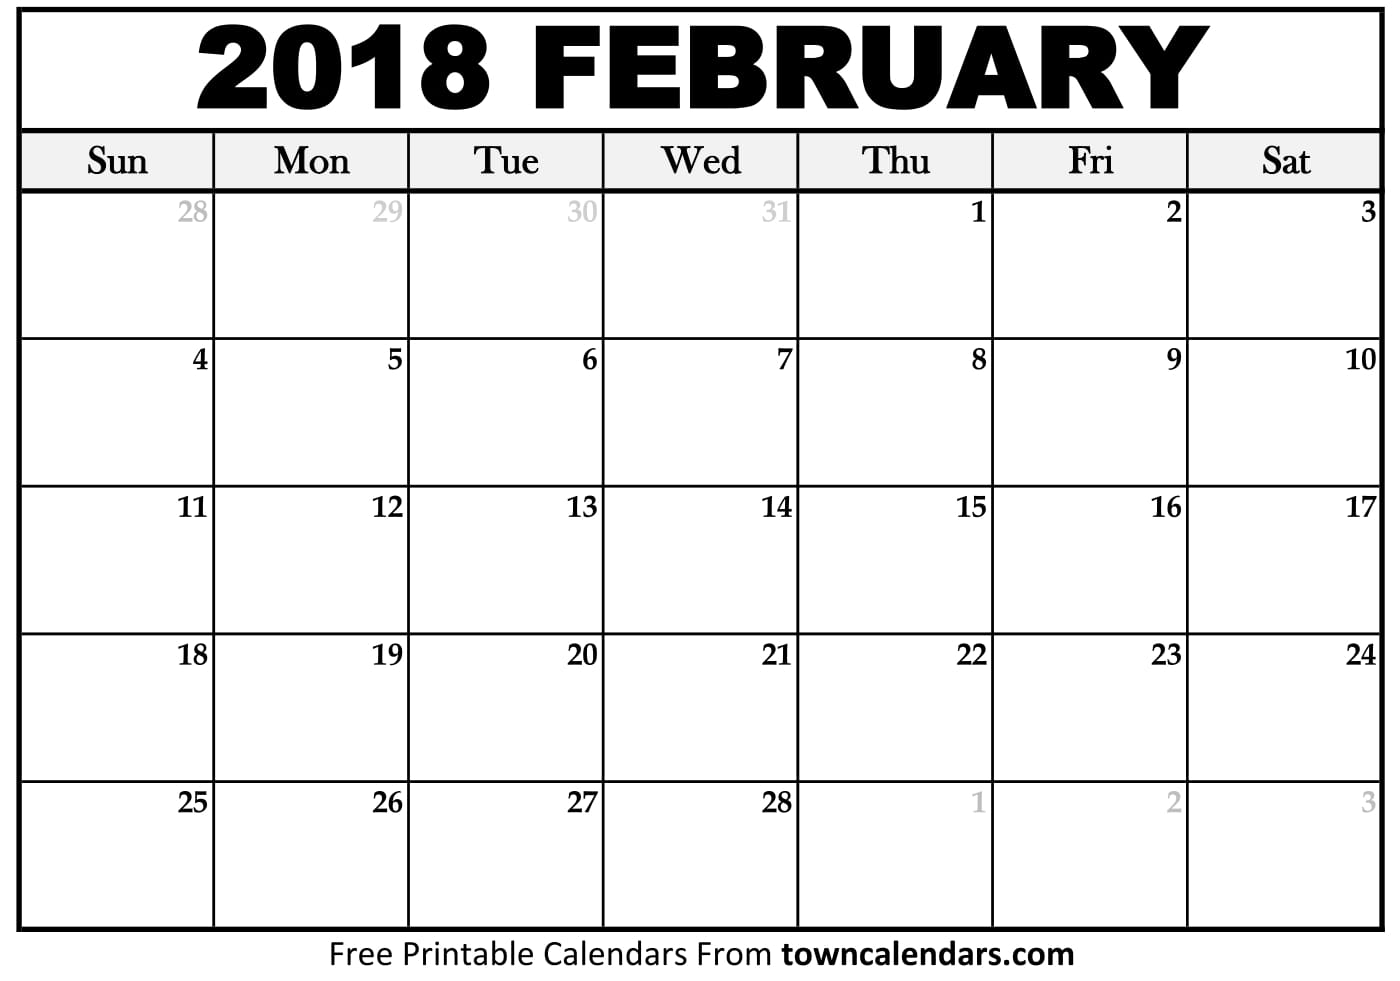 Printable February 2018 Calendar towncalendars com